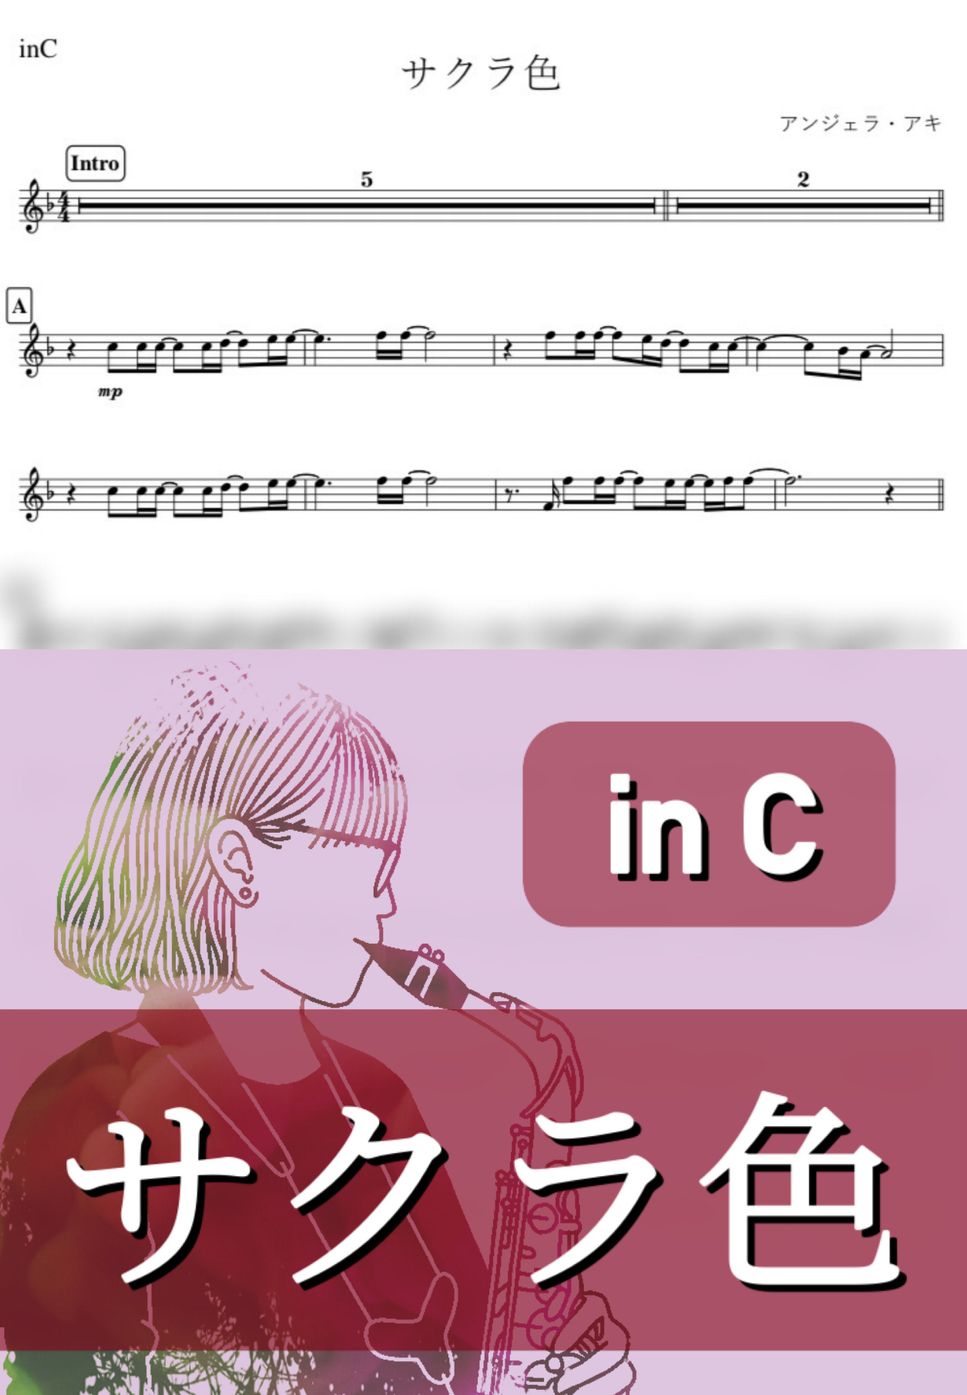 アンジェラ・アキ - サクラ色 (C) by kanamusic